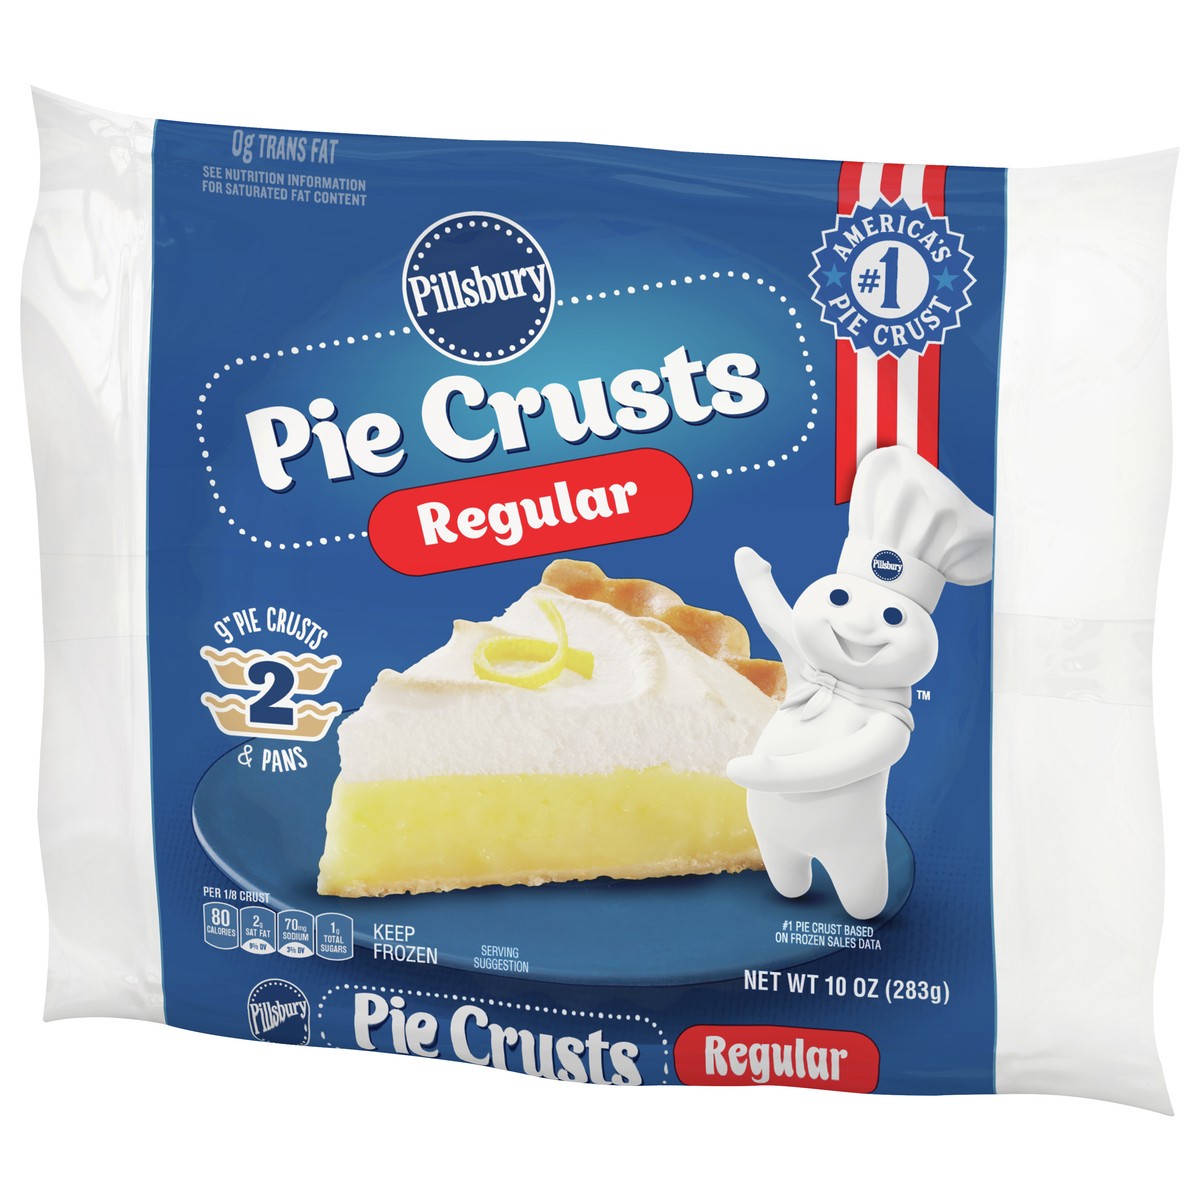 slide 10 of 13, Pillsbury Frozen Pie Crust, Regular, Two 9-Inch Pie Crusts & Pans, 2 ct, 10 oz, 2 ct